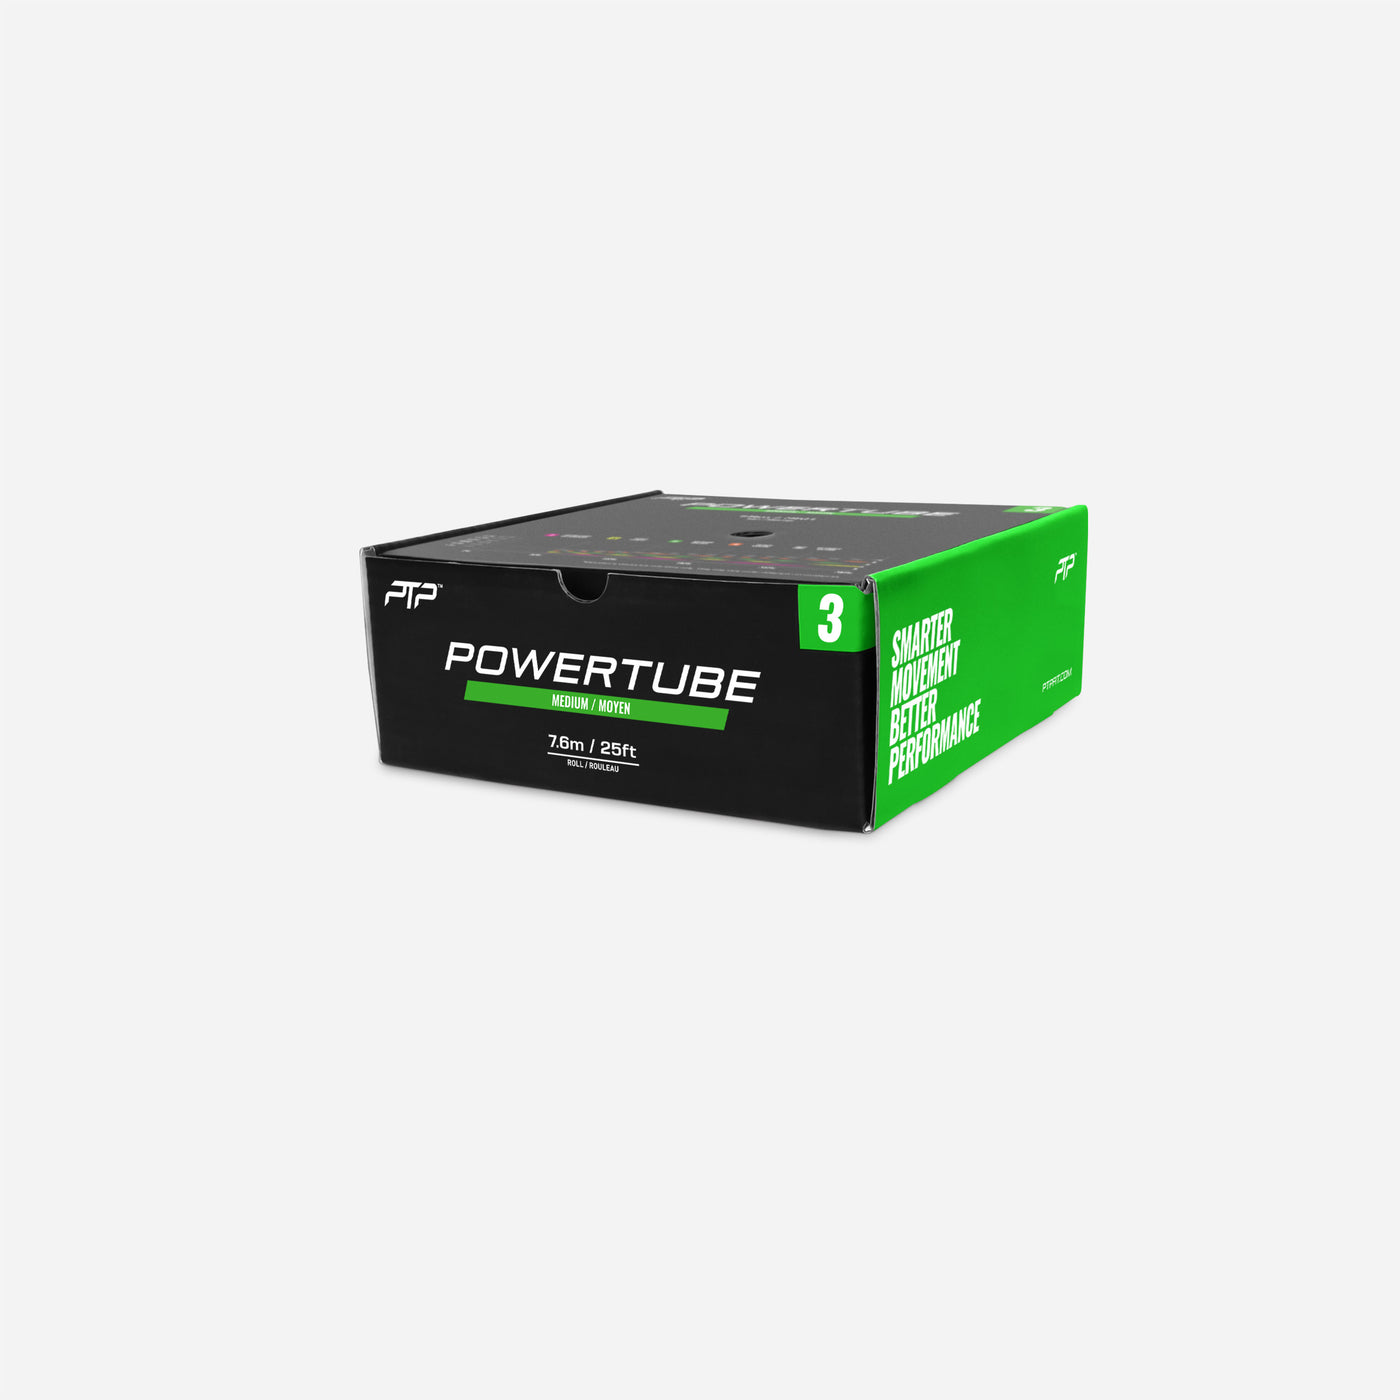 POWERTUBE MEDIUM 7.6M (25FT) SINGLE BOX